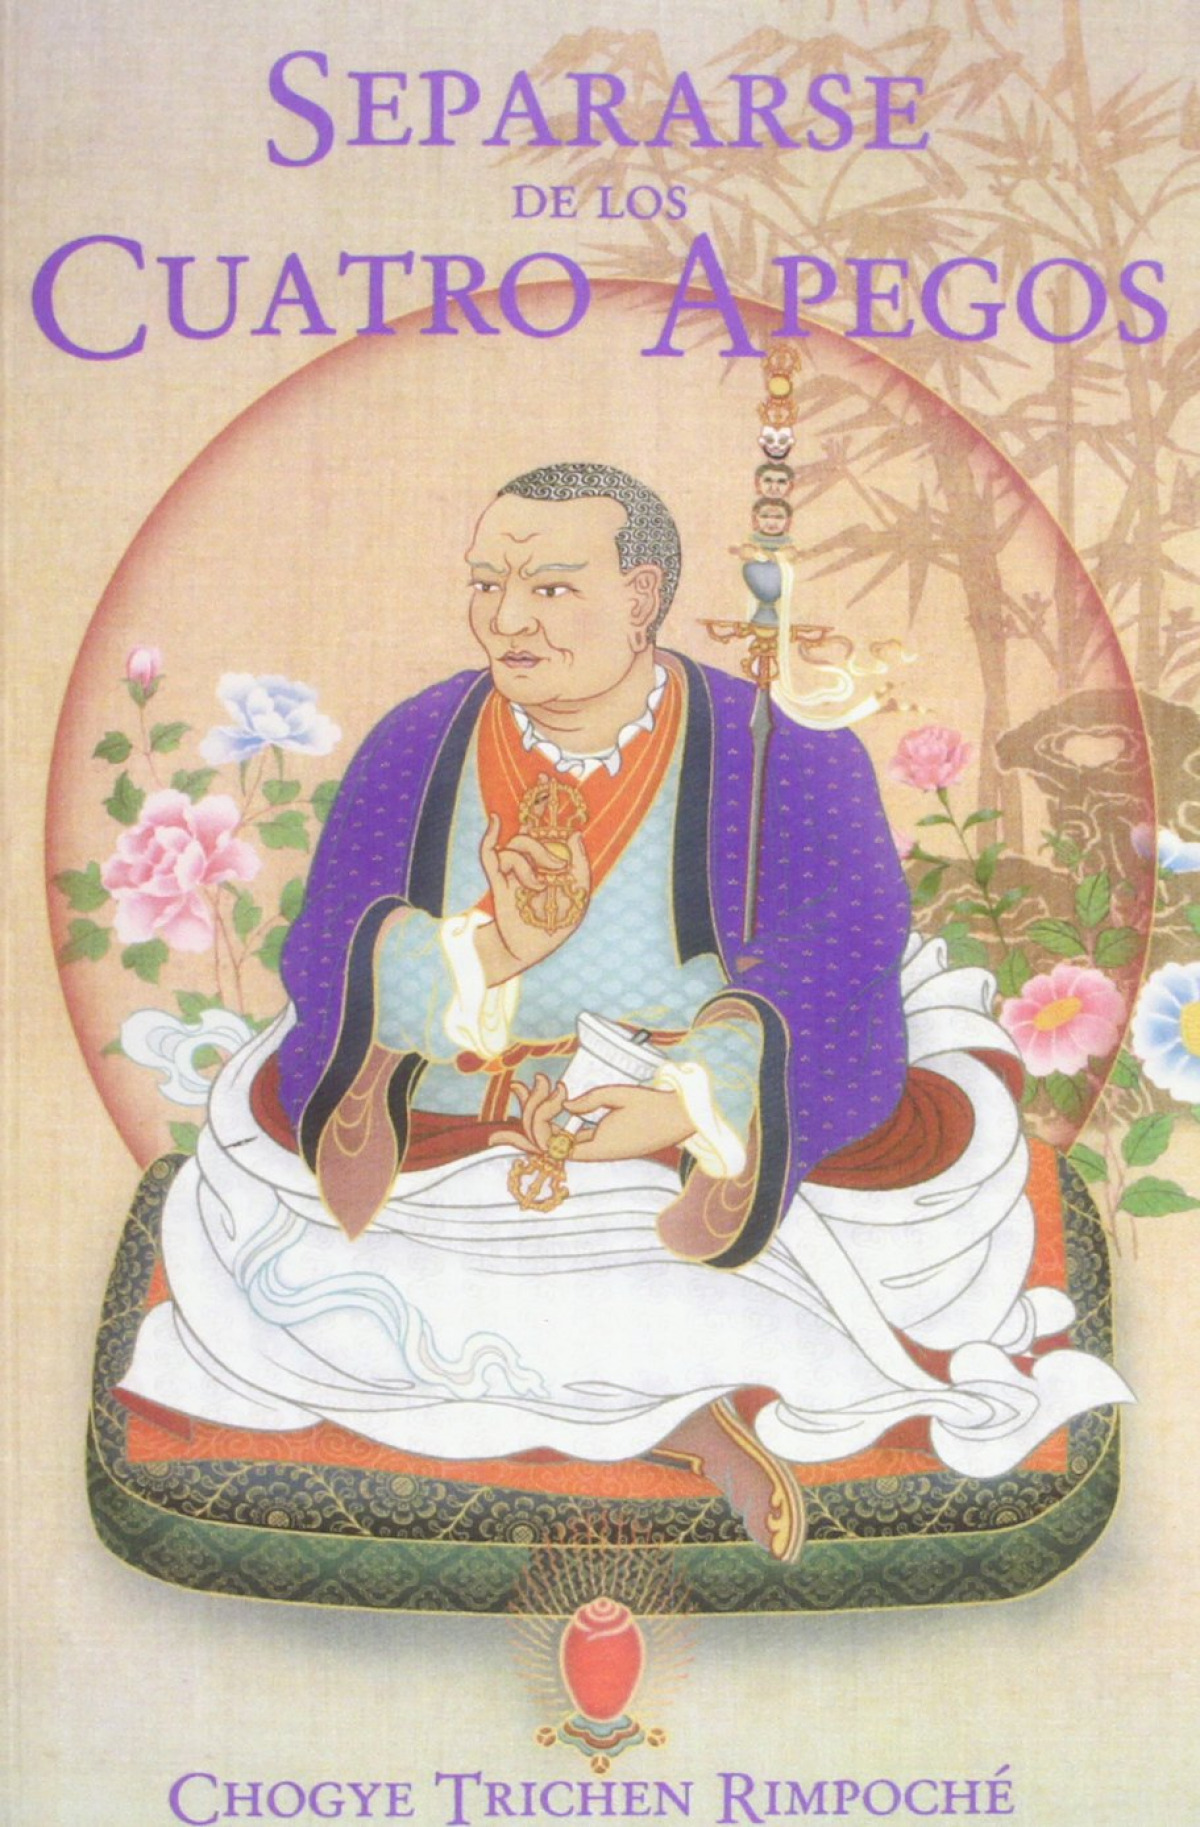 Separarse de los cuatro apegos - Trichen Rimpoche, Choqye